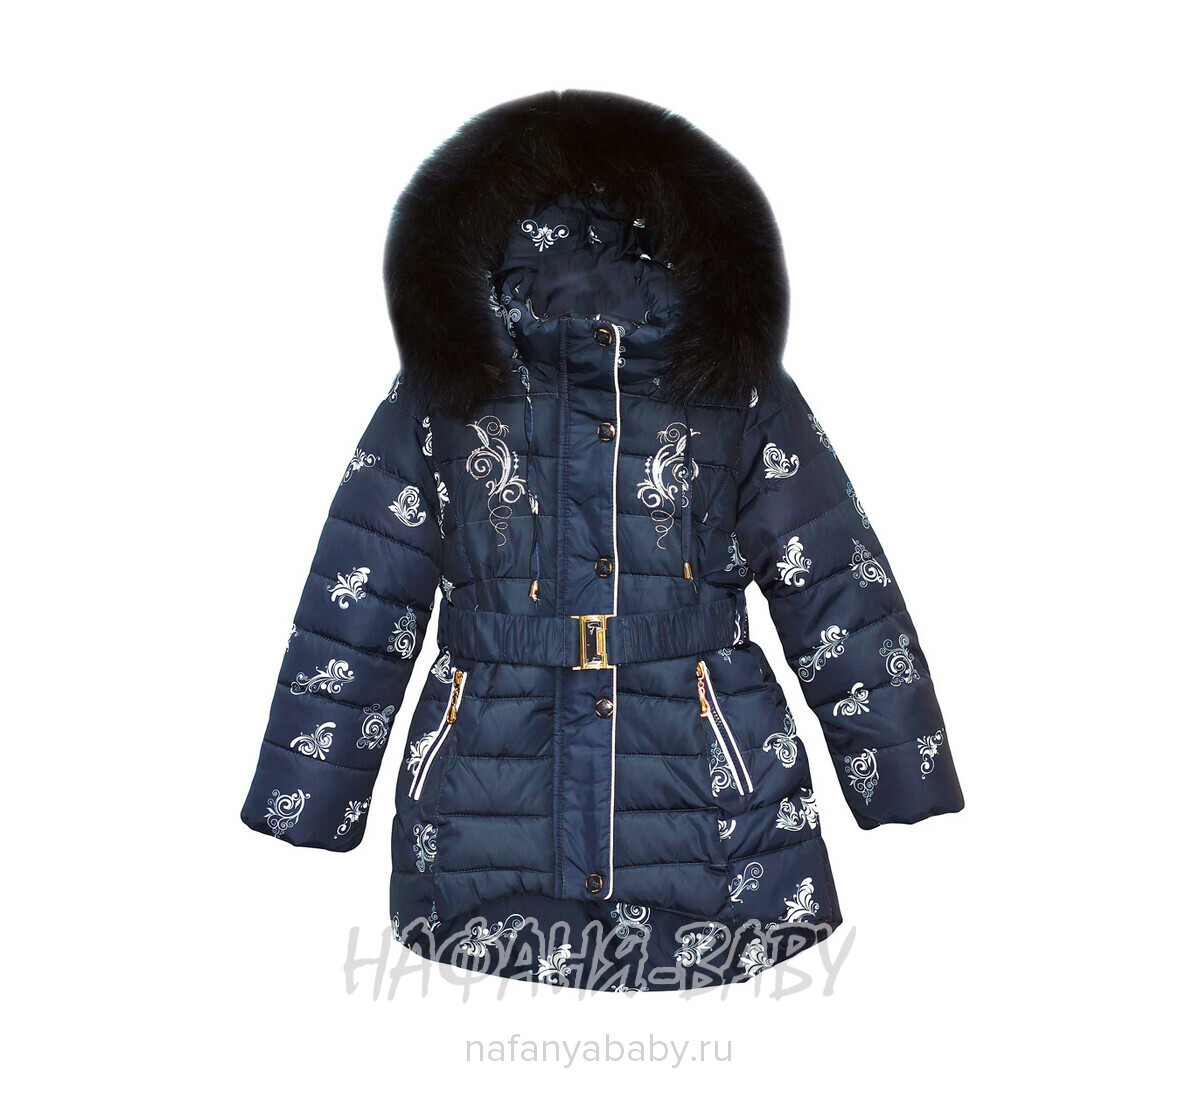 Детская зимняя удлиненная куртка ZE FEI, купить в интернет магазине Нафаня. арт: 6611.